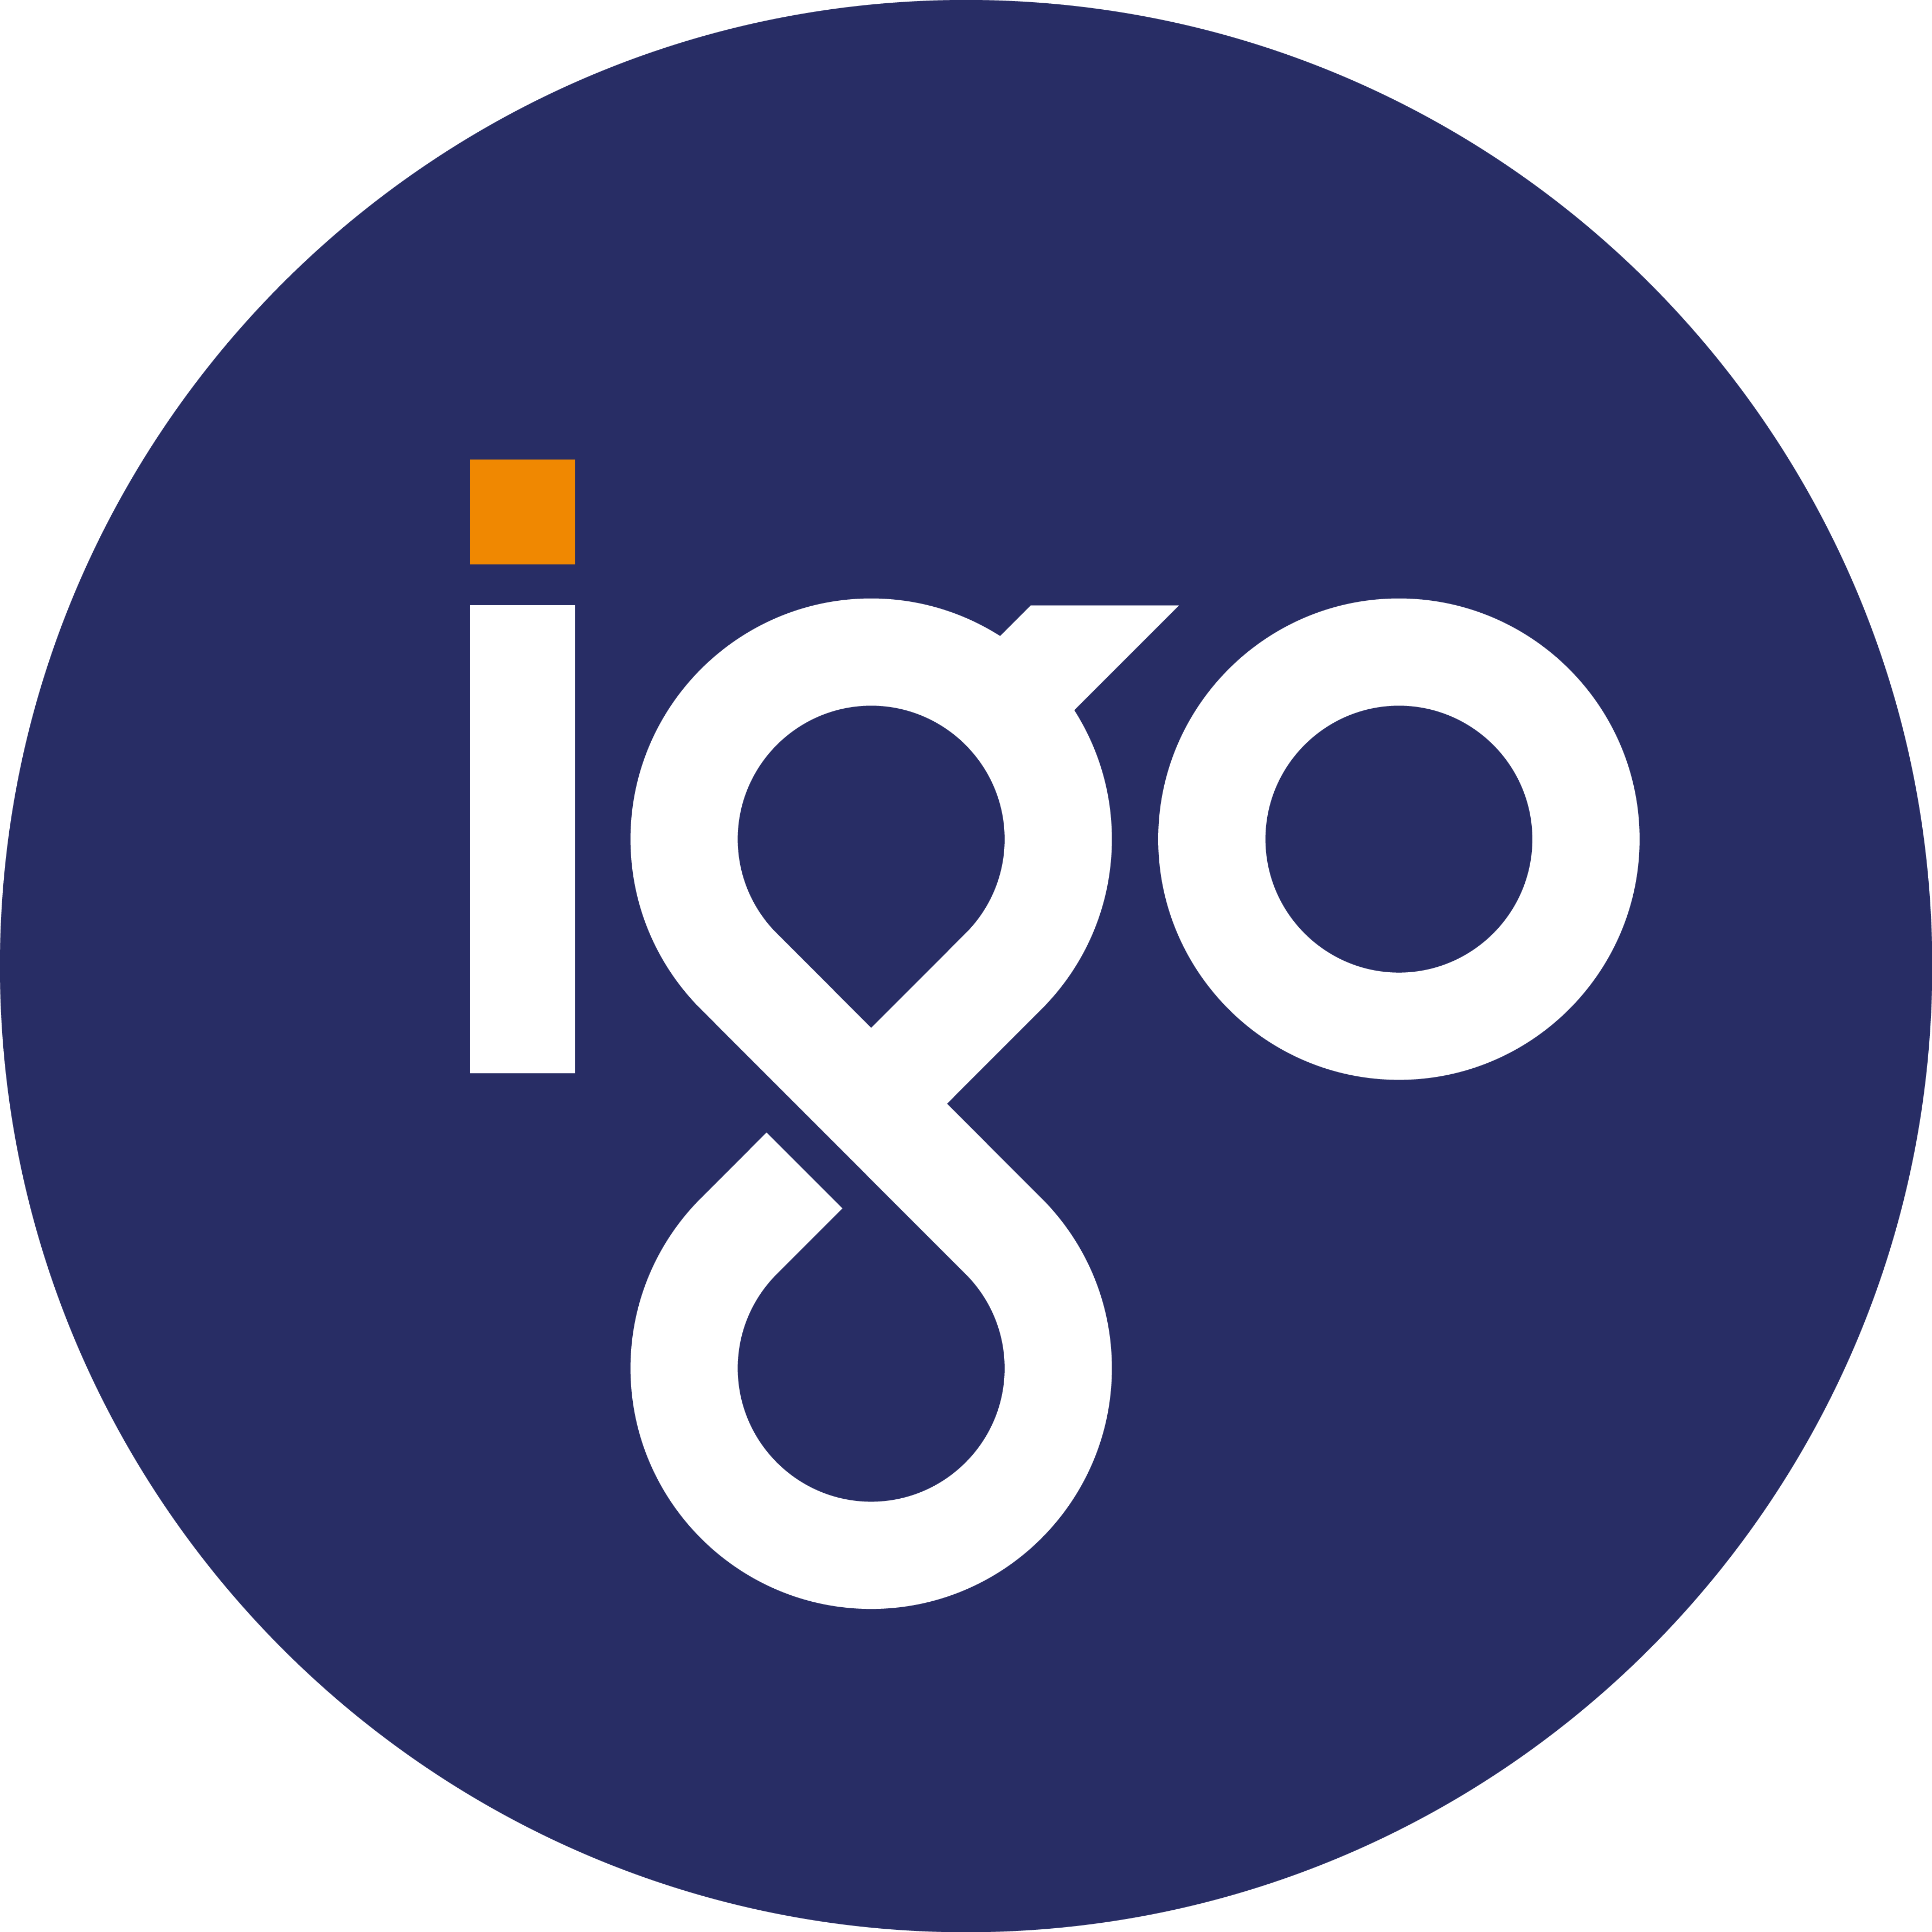 Igo Logo - INDEPENDENCE GROUP NL (IGO) Share Price & Information - ASX